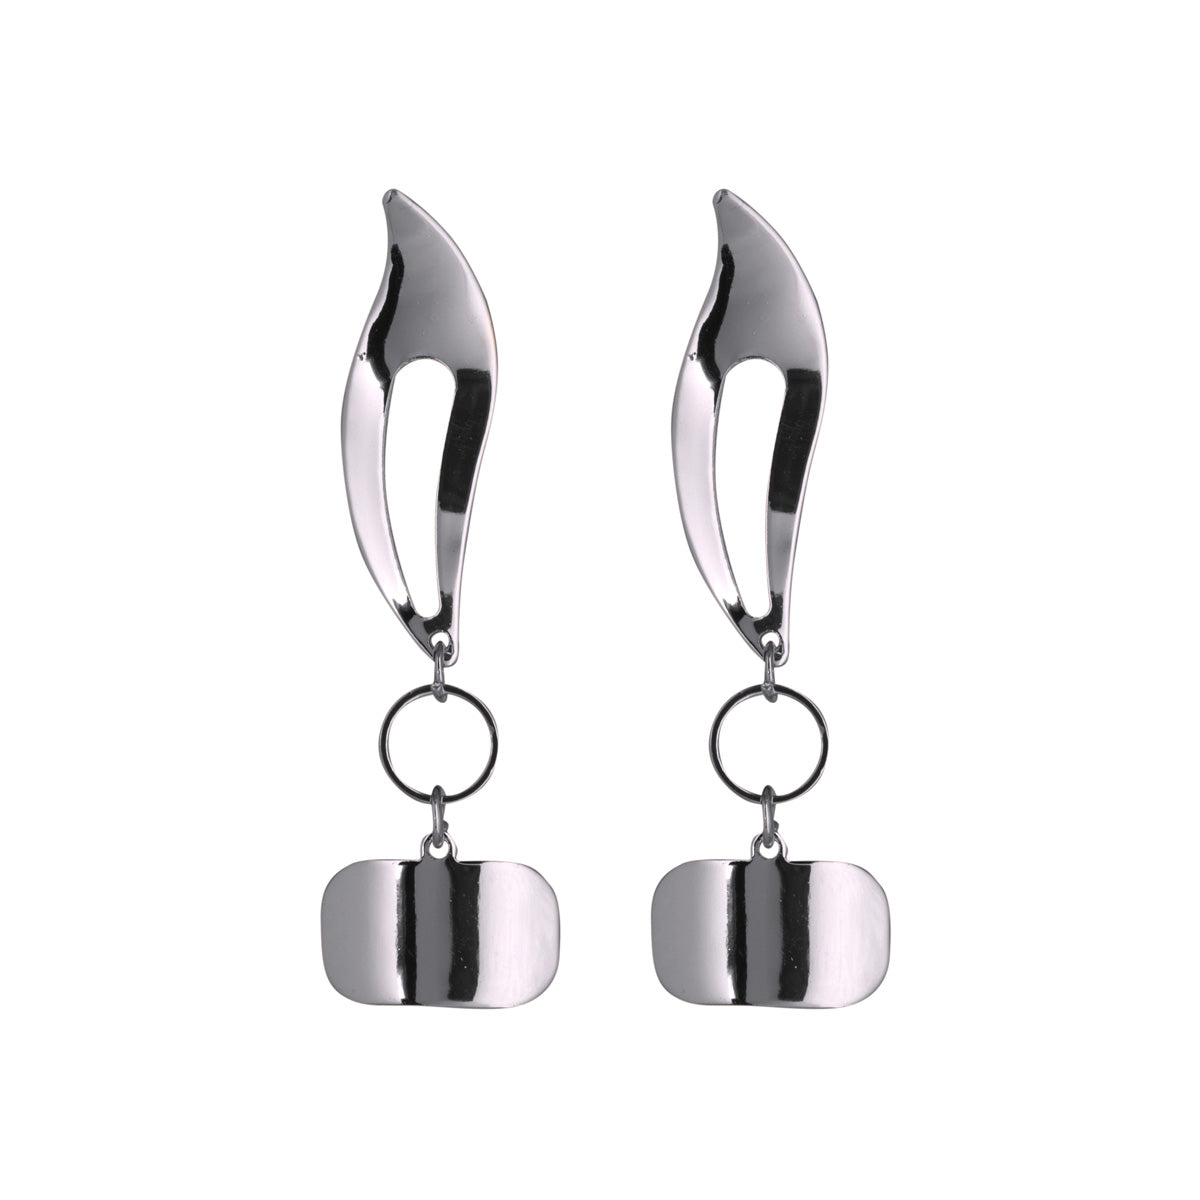 Metal hanging earrings